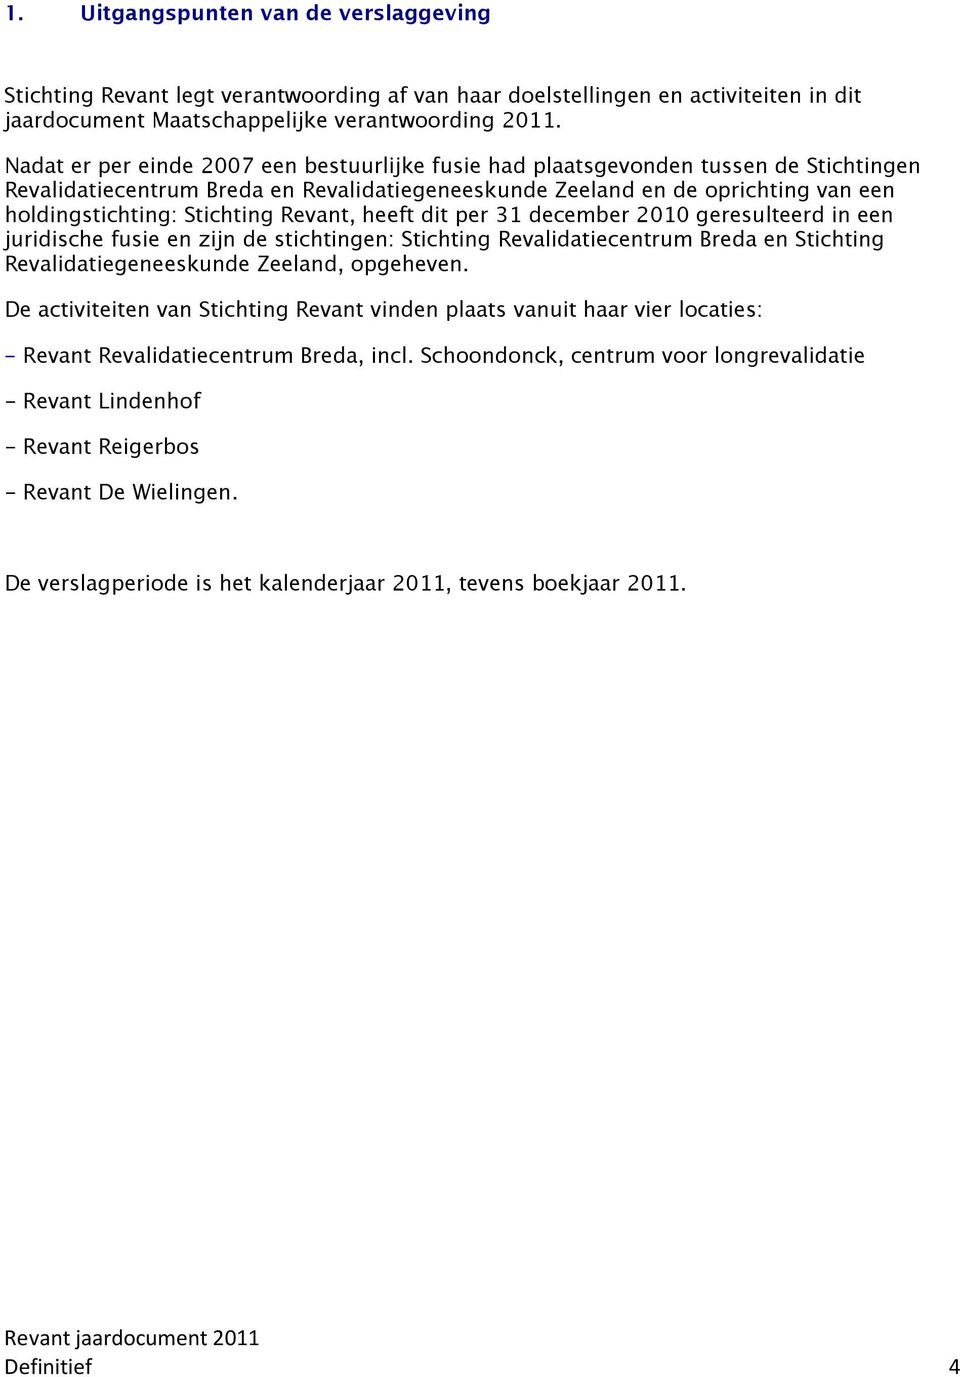 Revant, heeft dit per 31 december 2010 geresulteerd in een juridische fusie en zijn de stichtingen: Stichting Revalidatiecentrum Breda en Stichting Revalidatiegeneeskunde Zeeland, opgeheven.